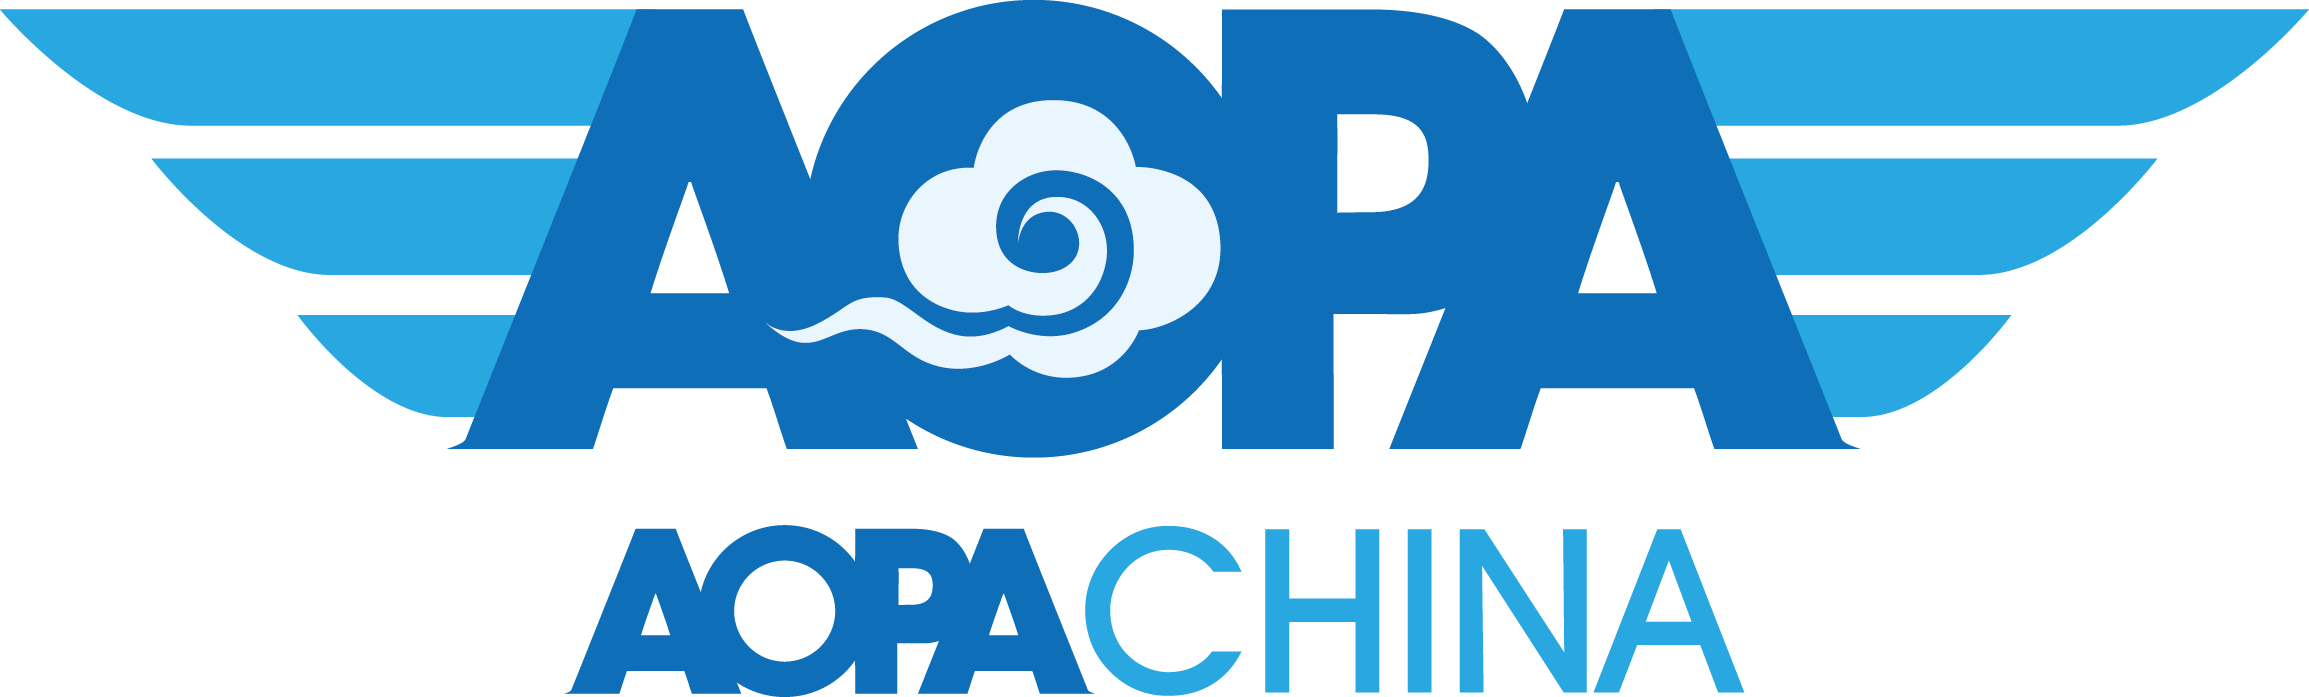 协会logo.png